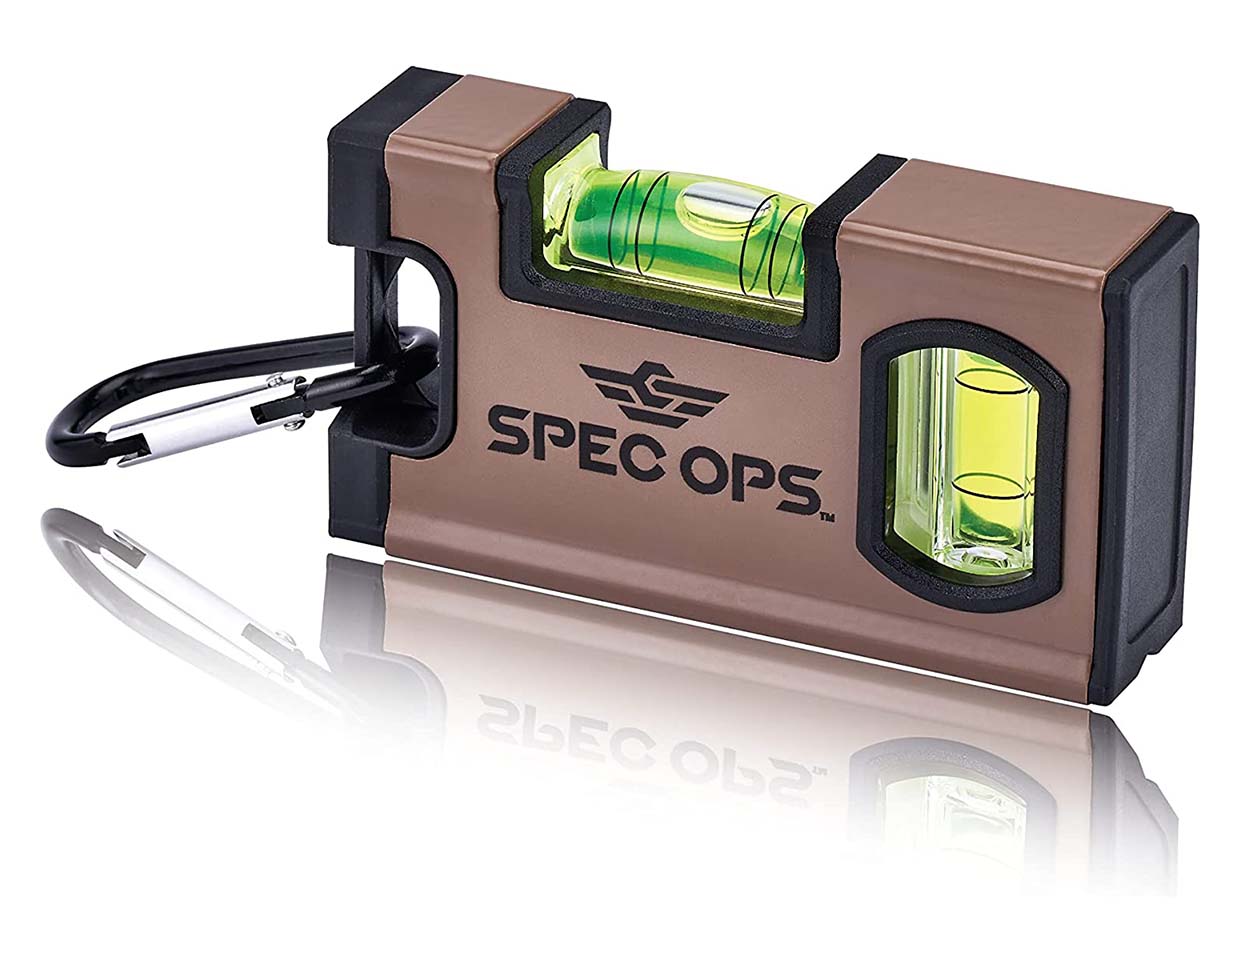 Spec Ops Pocket Level